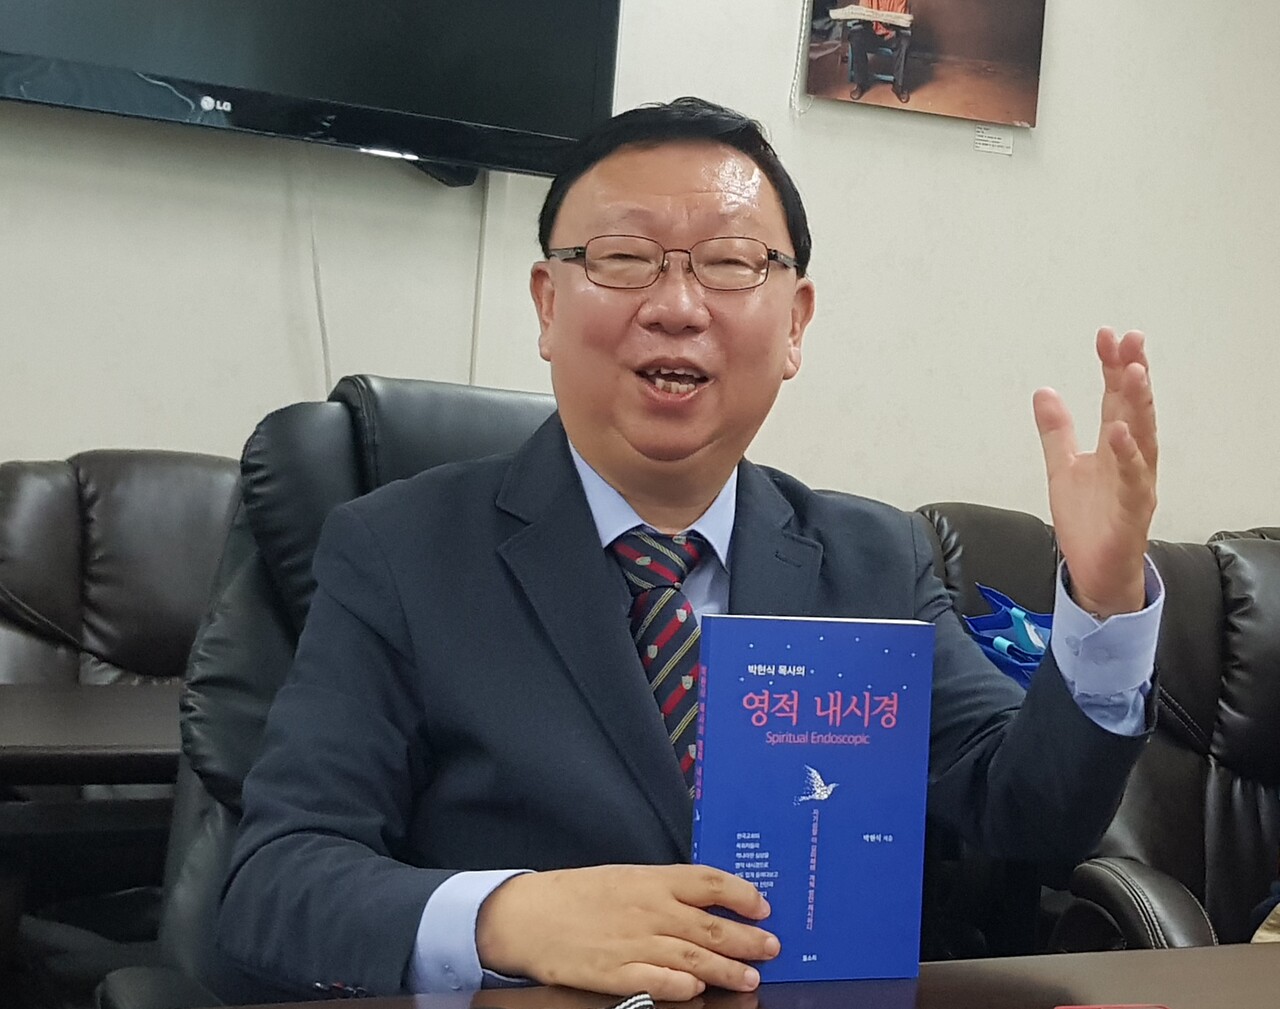 저자 박현식 목사가 책에 대해서 설명하고 있다.